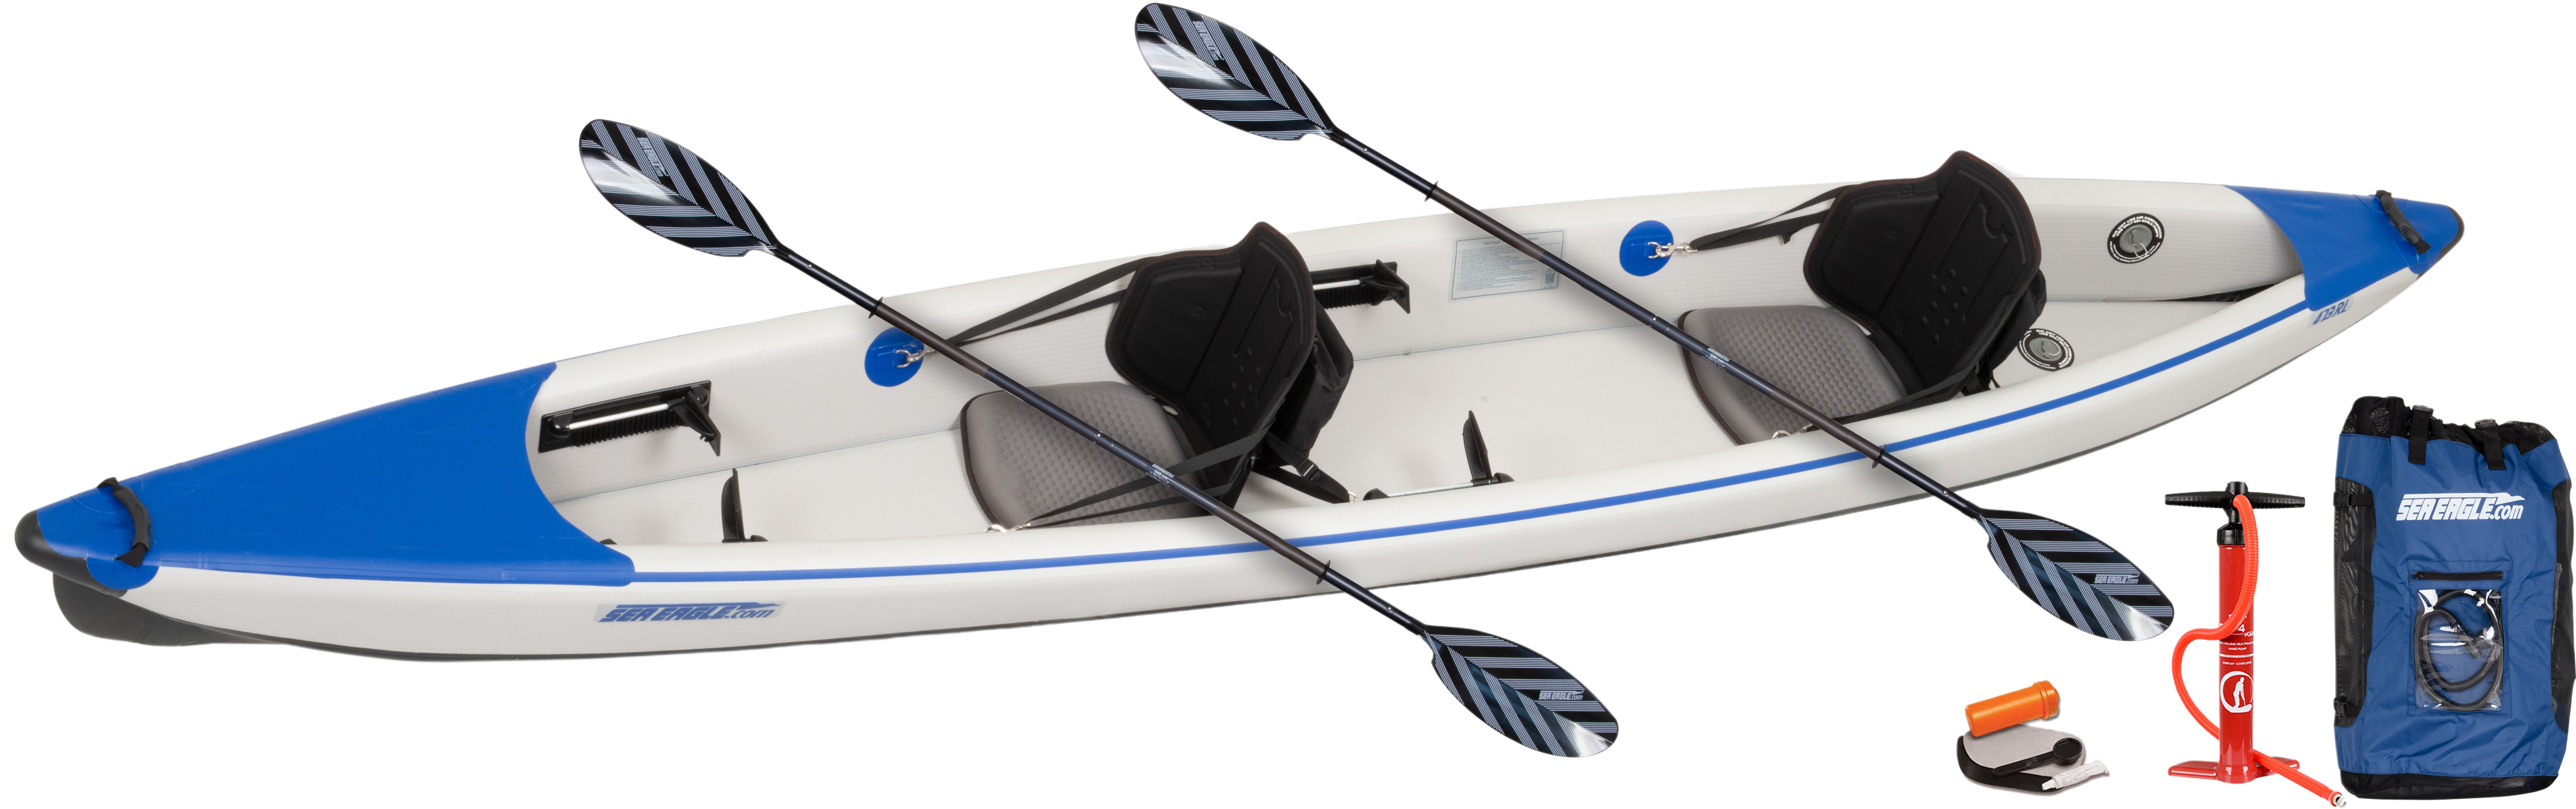 Sea Eagle, Sea Eagle RazorLite 473RLK_P Inflatable Kayak Pro Tandem Package New